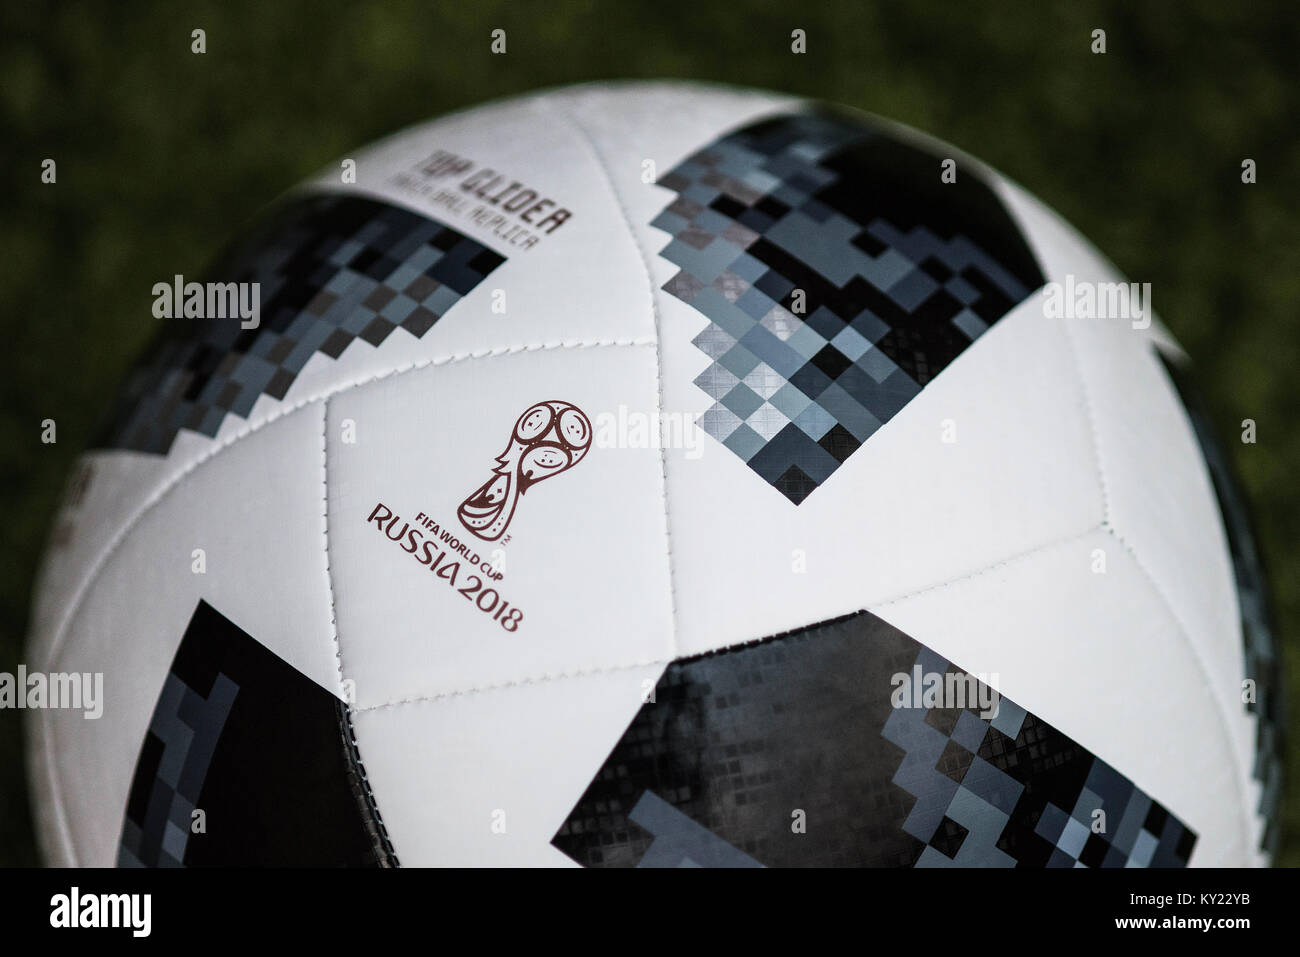 Matchball oficial para la Copa Mundial de la FIFA 2018. Telstar adidas Football. Foto de stock